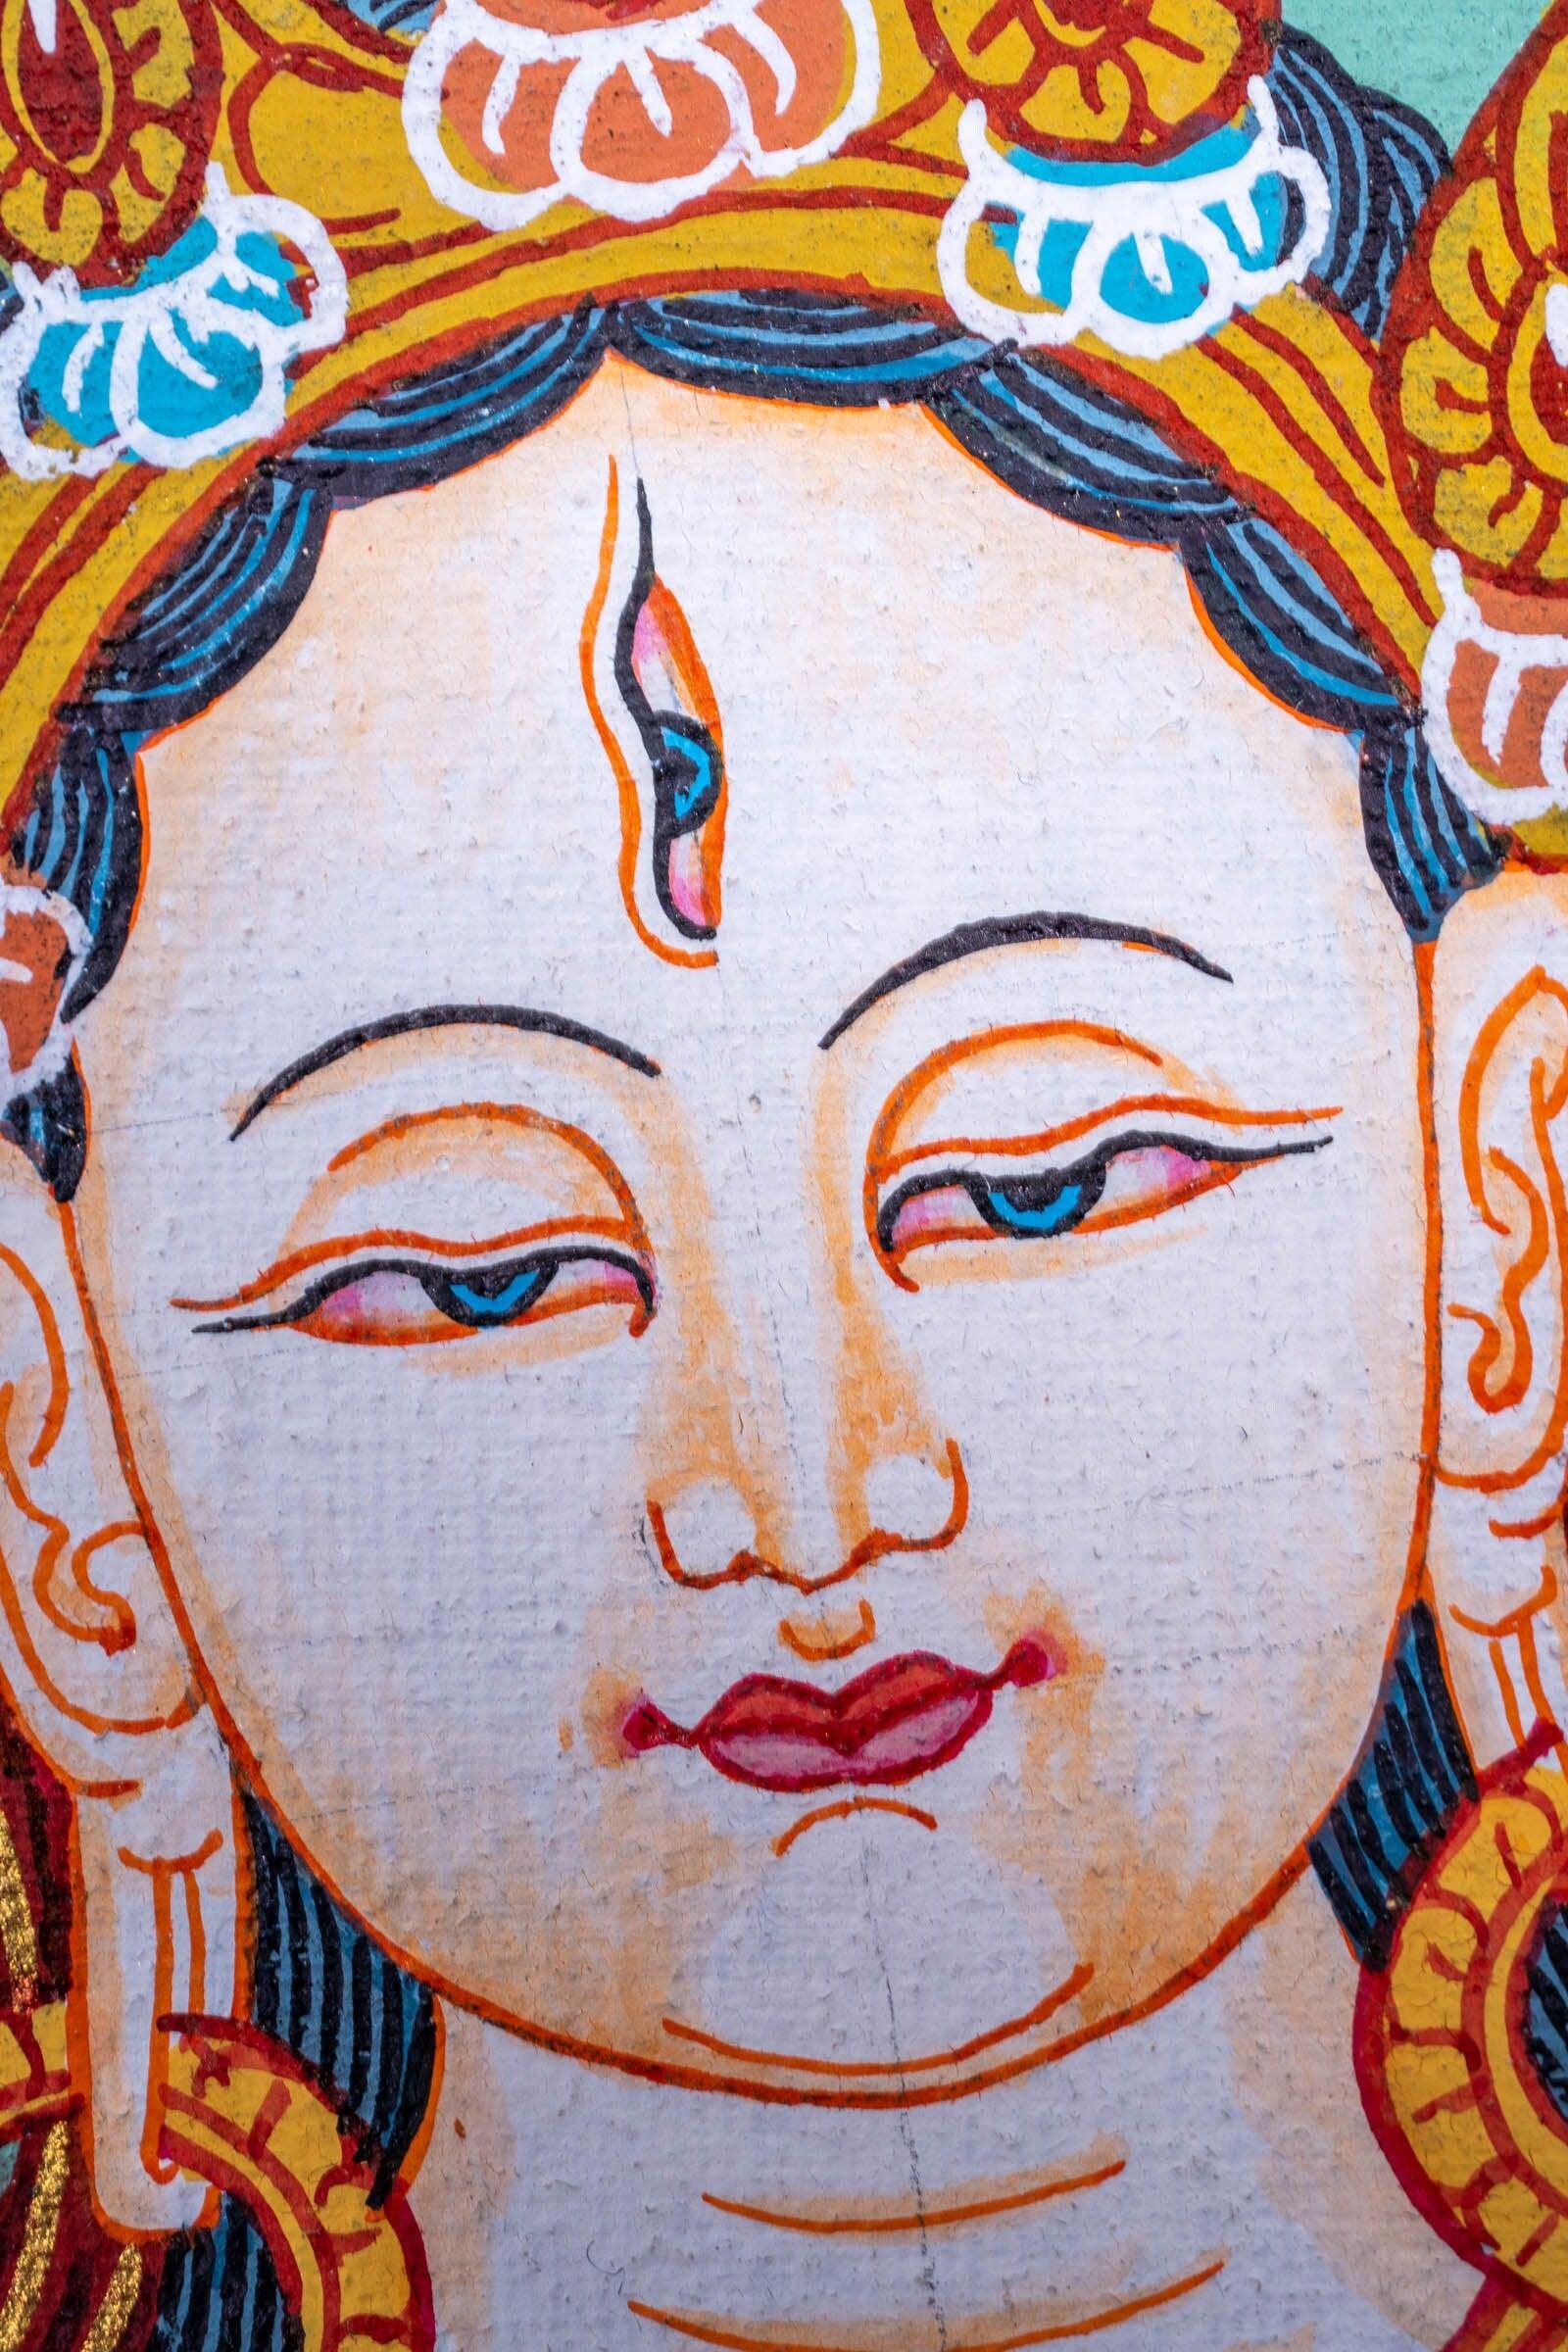 White Tara Thangka Painting - Himalayas Shop